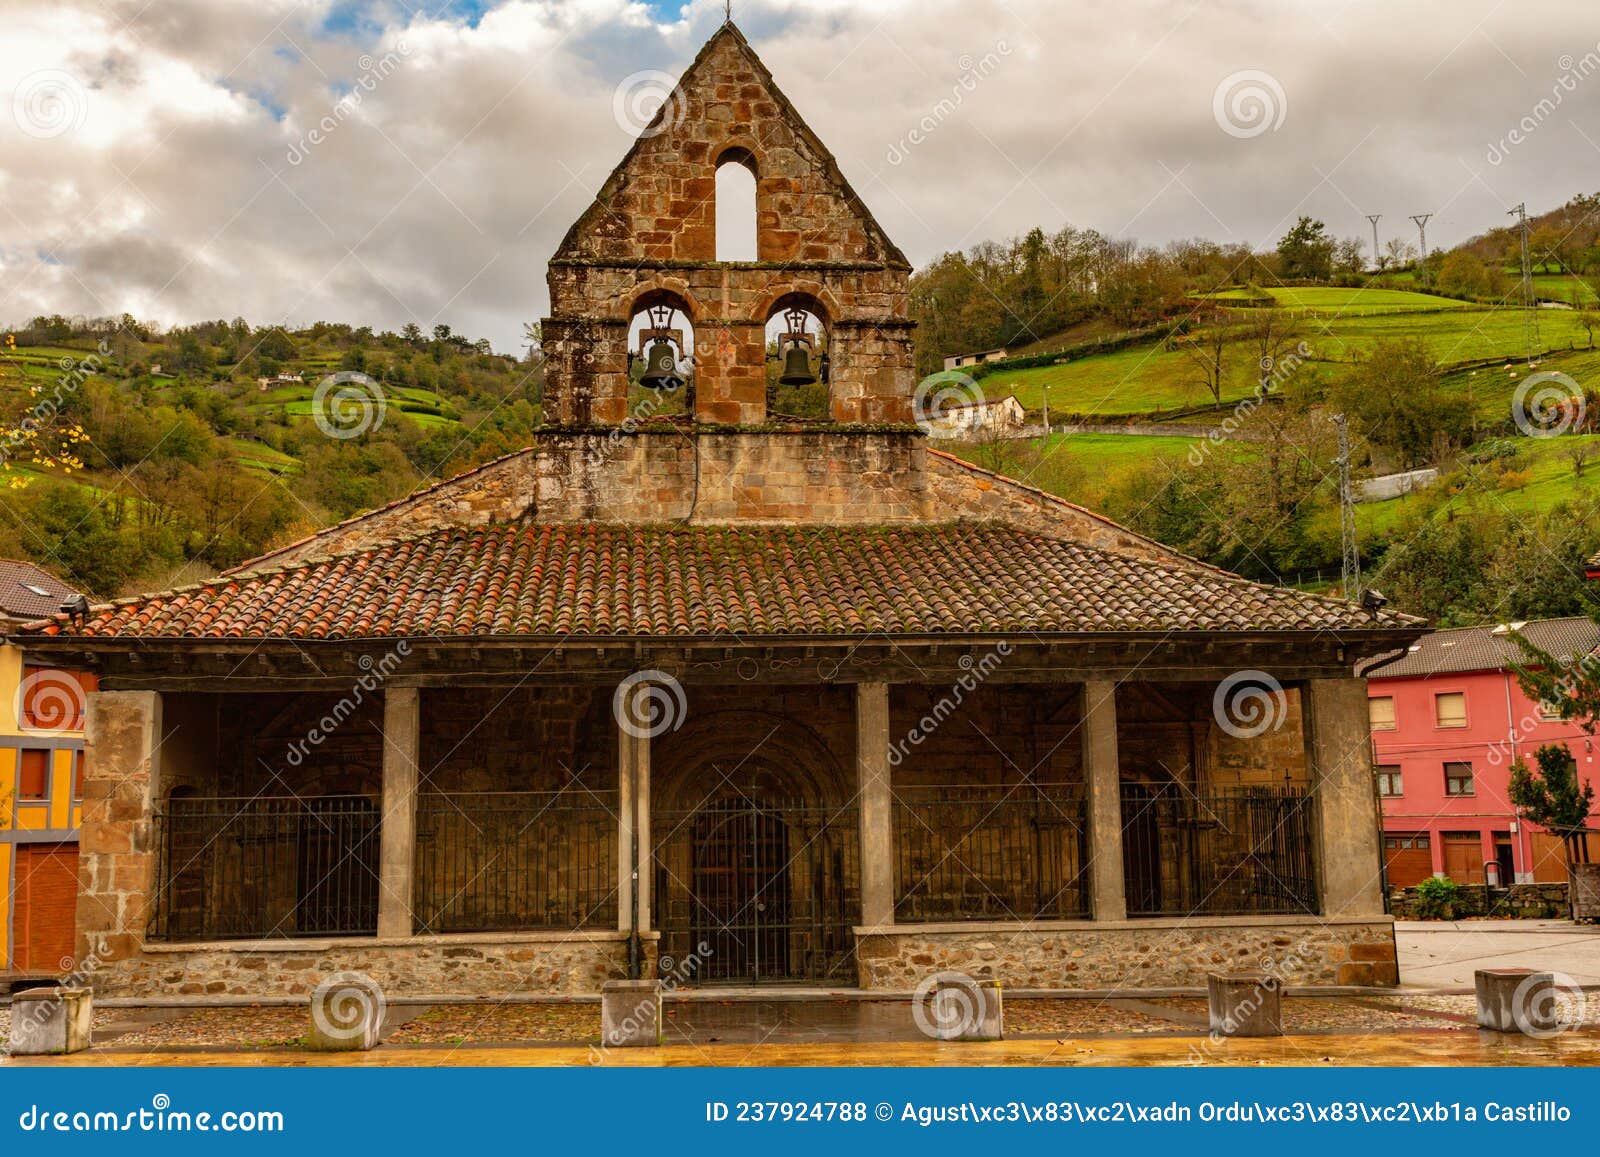 romanesque church of san nicolas de villoria